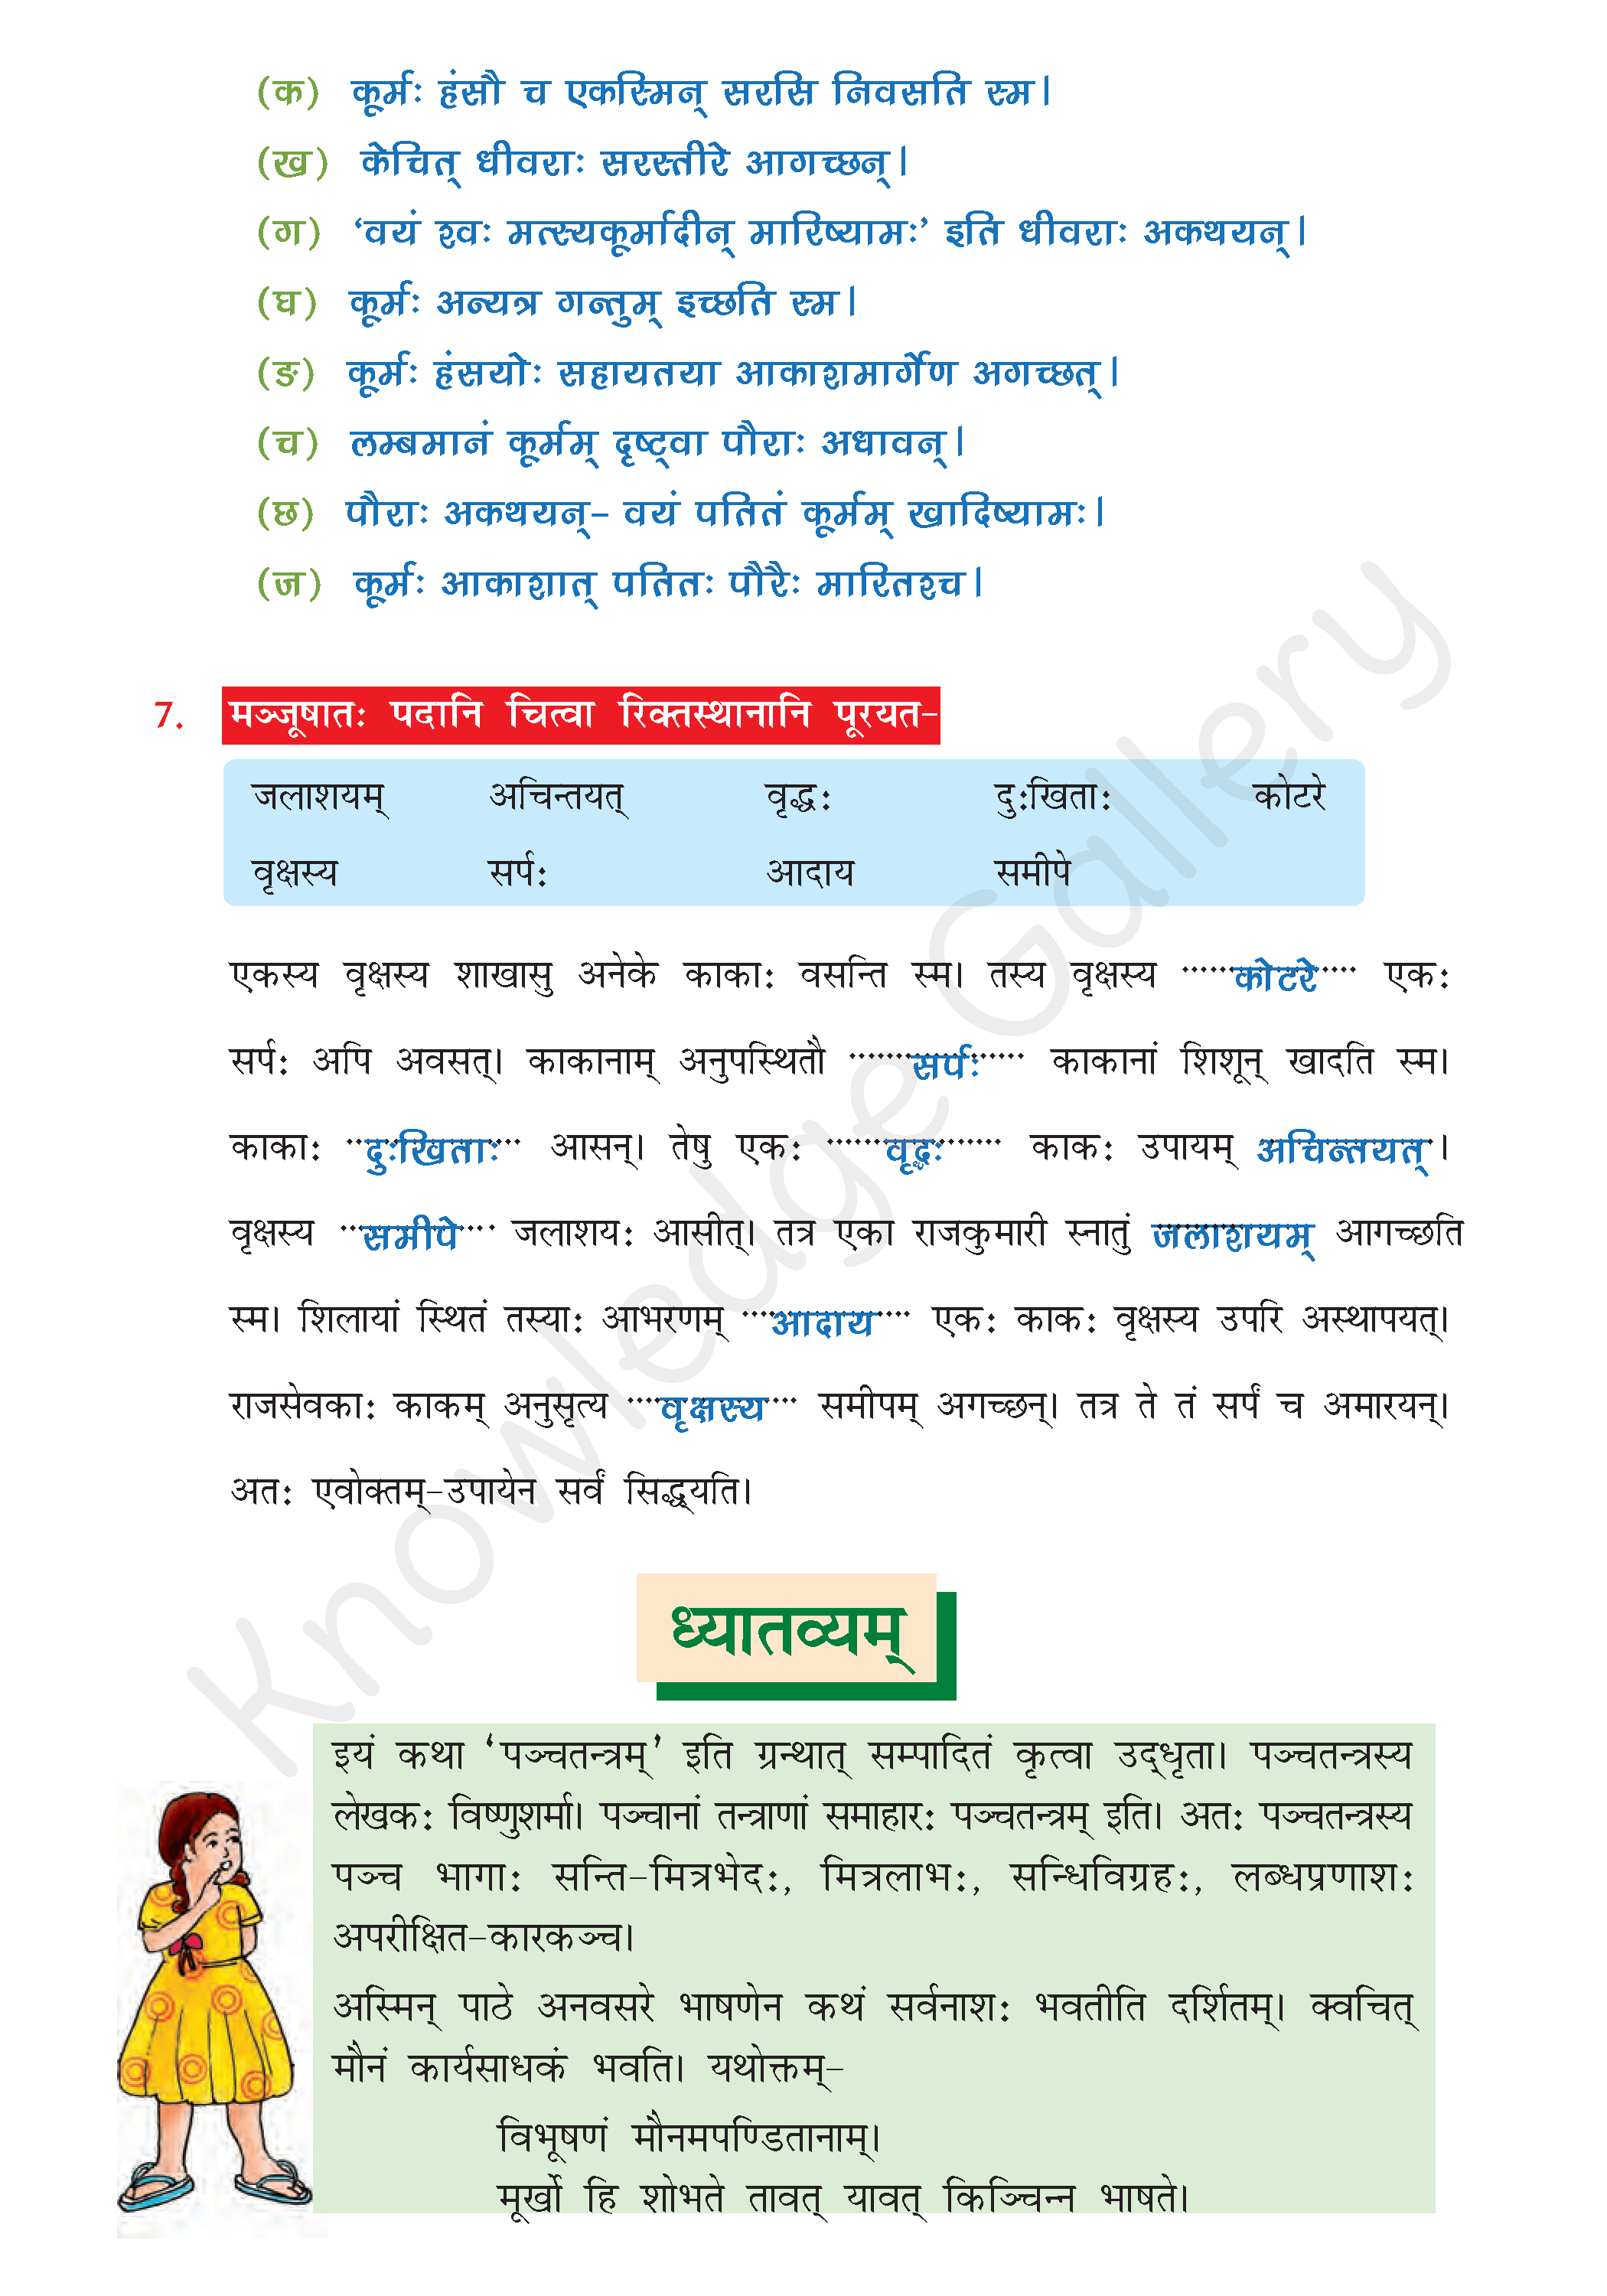 NCERT Solution For Class 7 Sanskrit Chapter 2 part 6